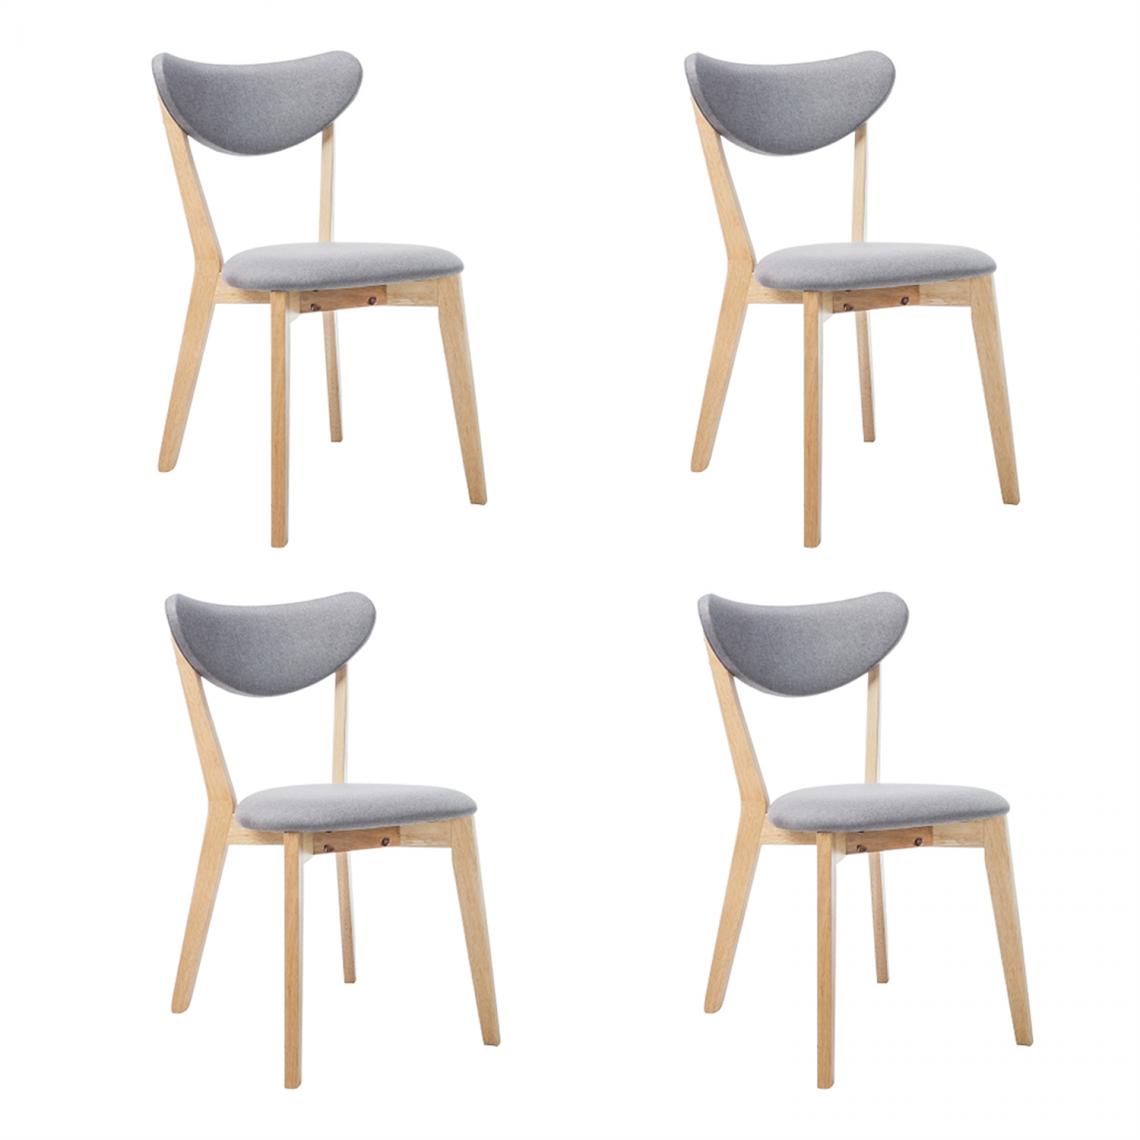 Hucoco - BRANTO - Lot de 4 chaises en bois - Style scandinave - 76x45x40 cm - Tissu haute qualité - Gris - Chaises